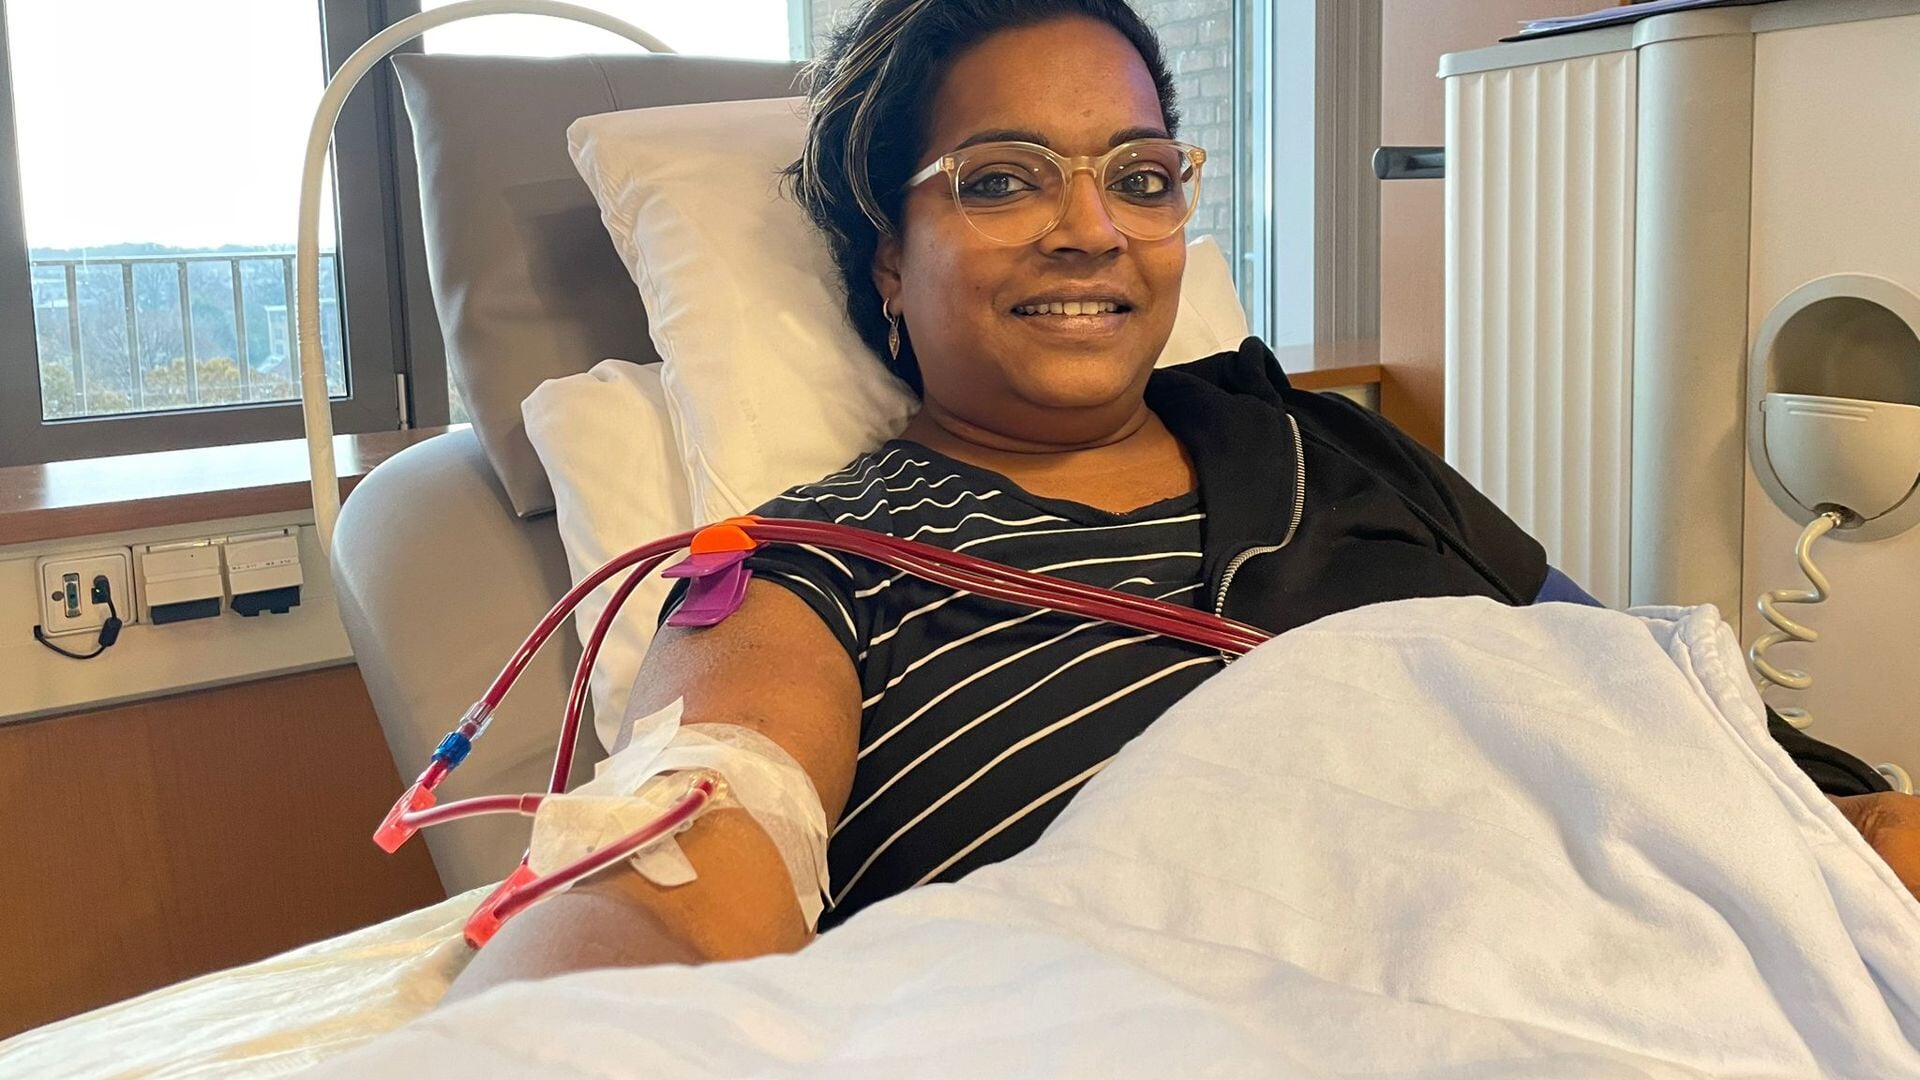 Het dialyseren en haar chronische ziekte beperken Sheva van Moorsel uit Deurne enorm in het dagelijkse leven.